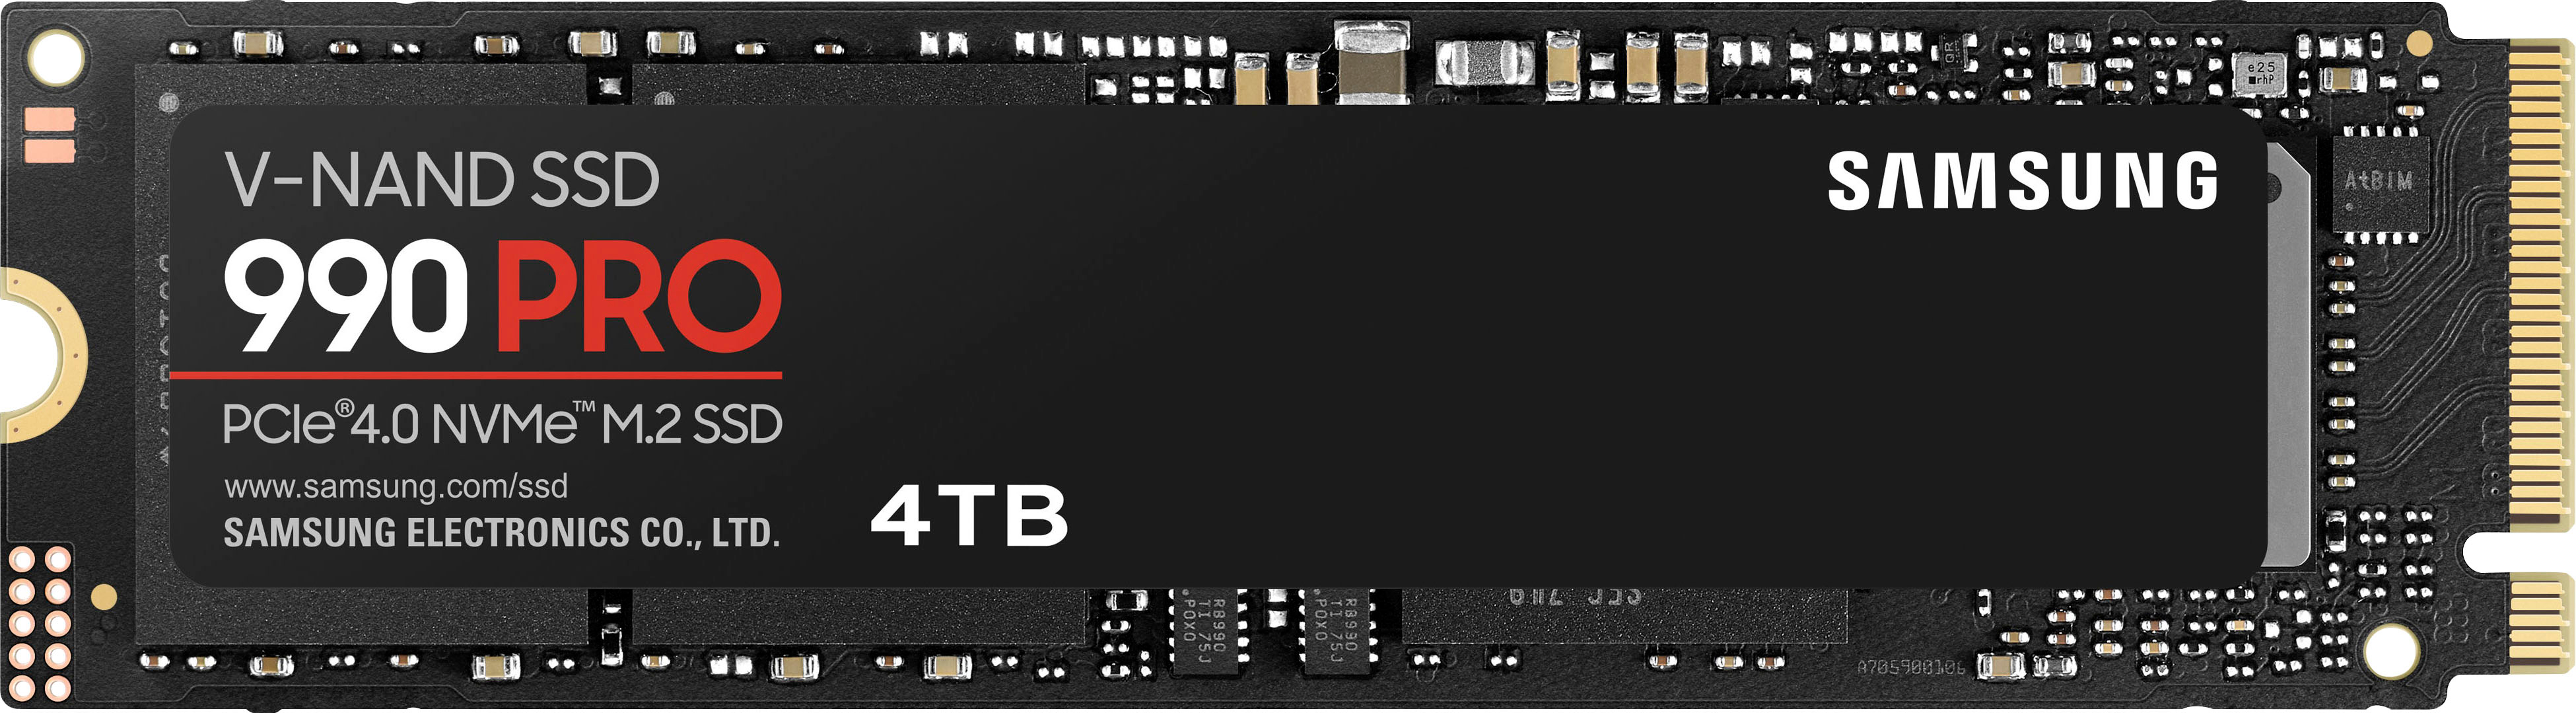 Évaluation du disque SSD 990 Pro de Samsung - Blogue Best Buy